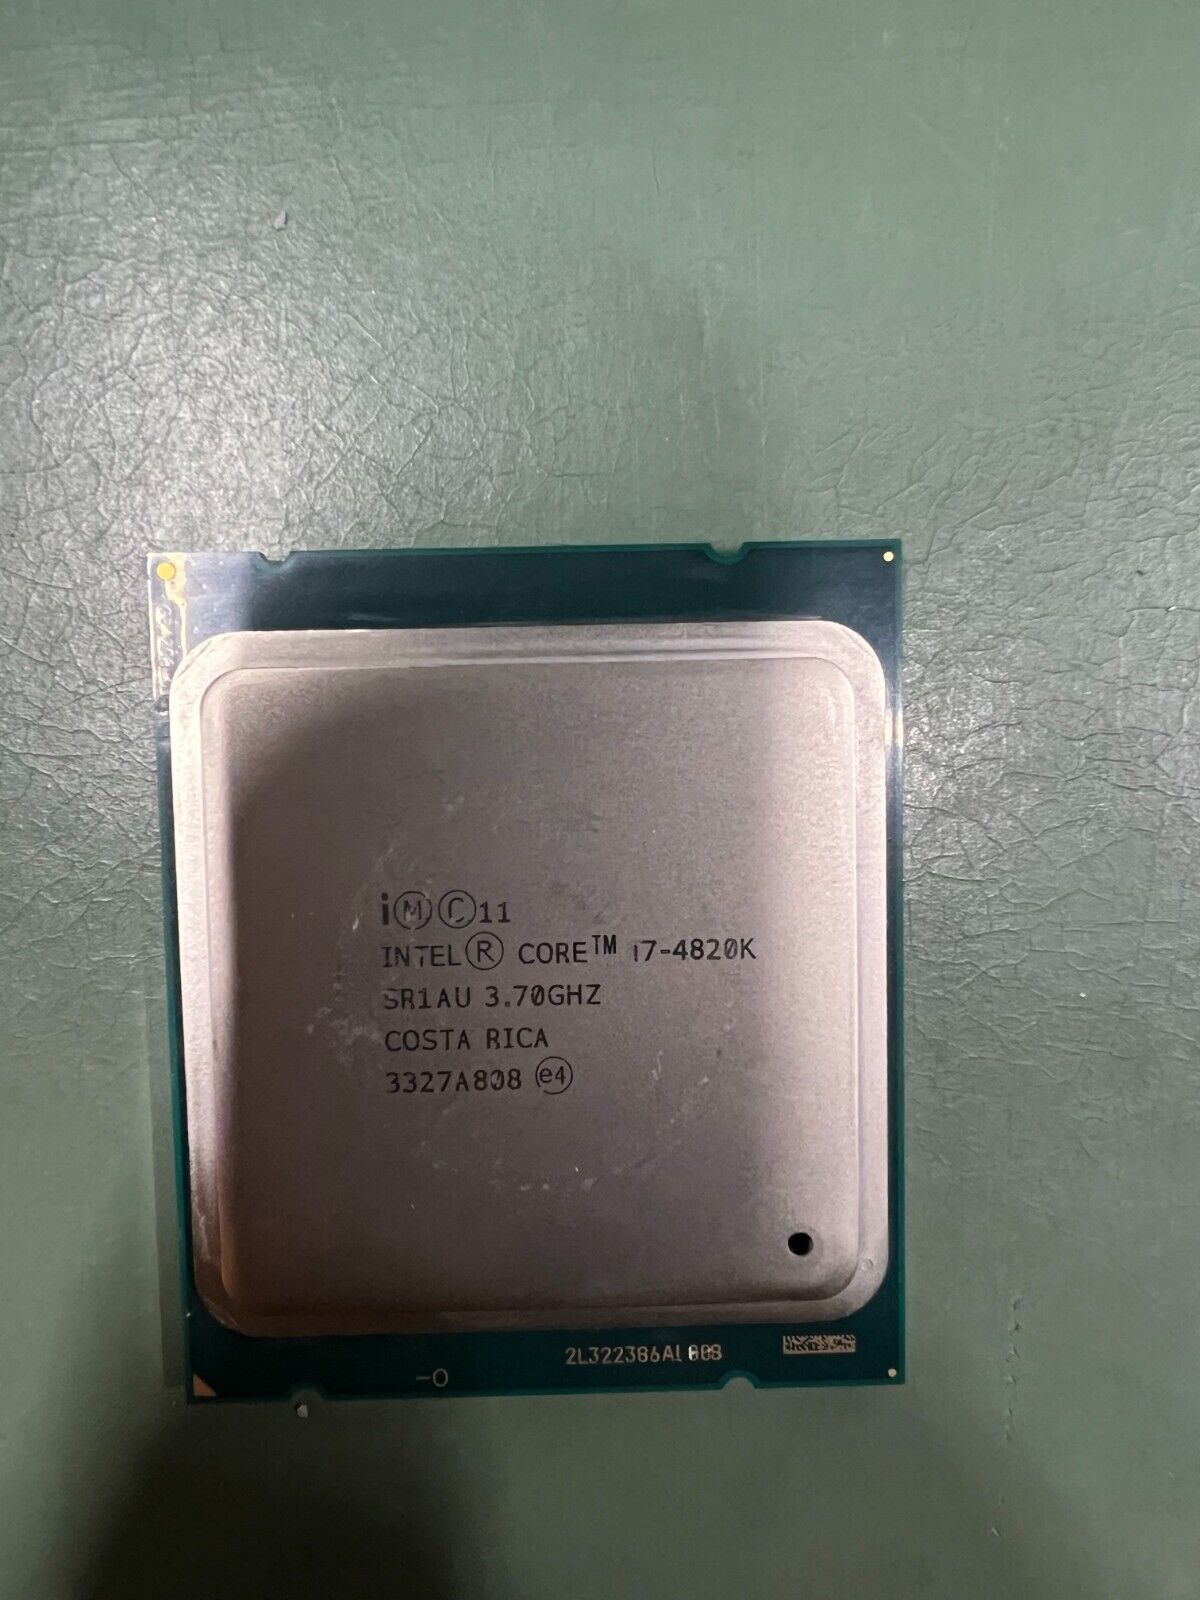 Intel Core i7-4820k SR1AU 3.70GHz LGA2011 4 Core / 8 Thread CPU